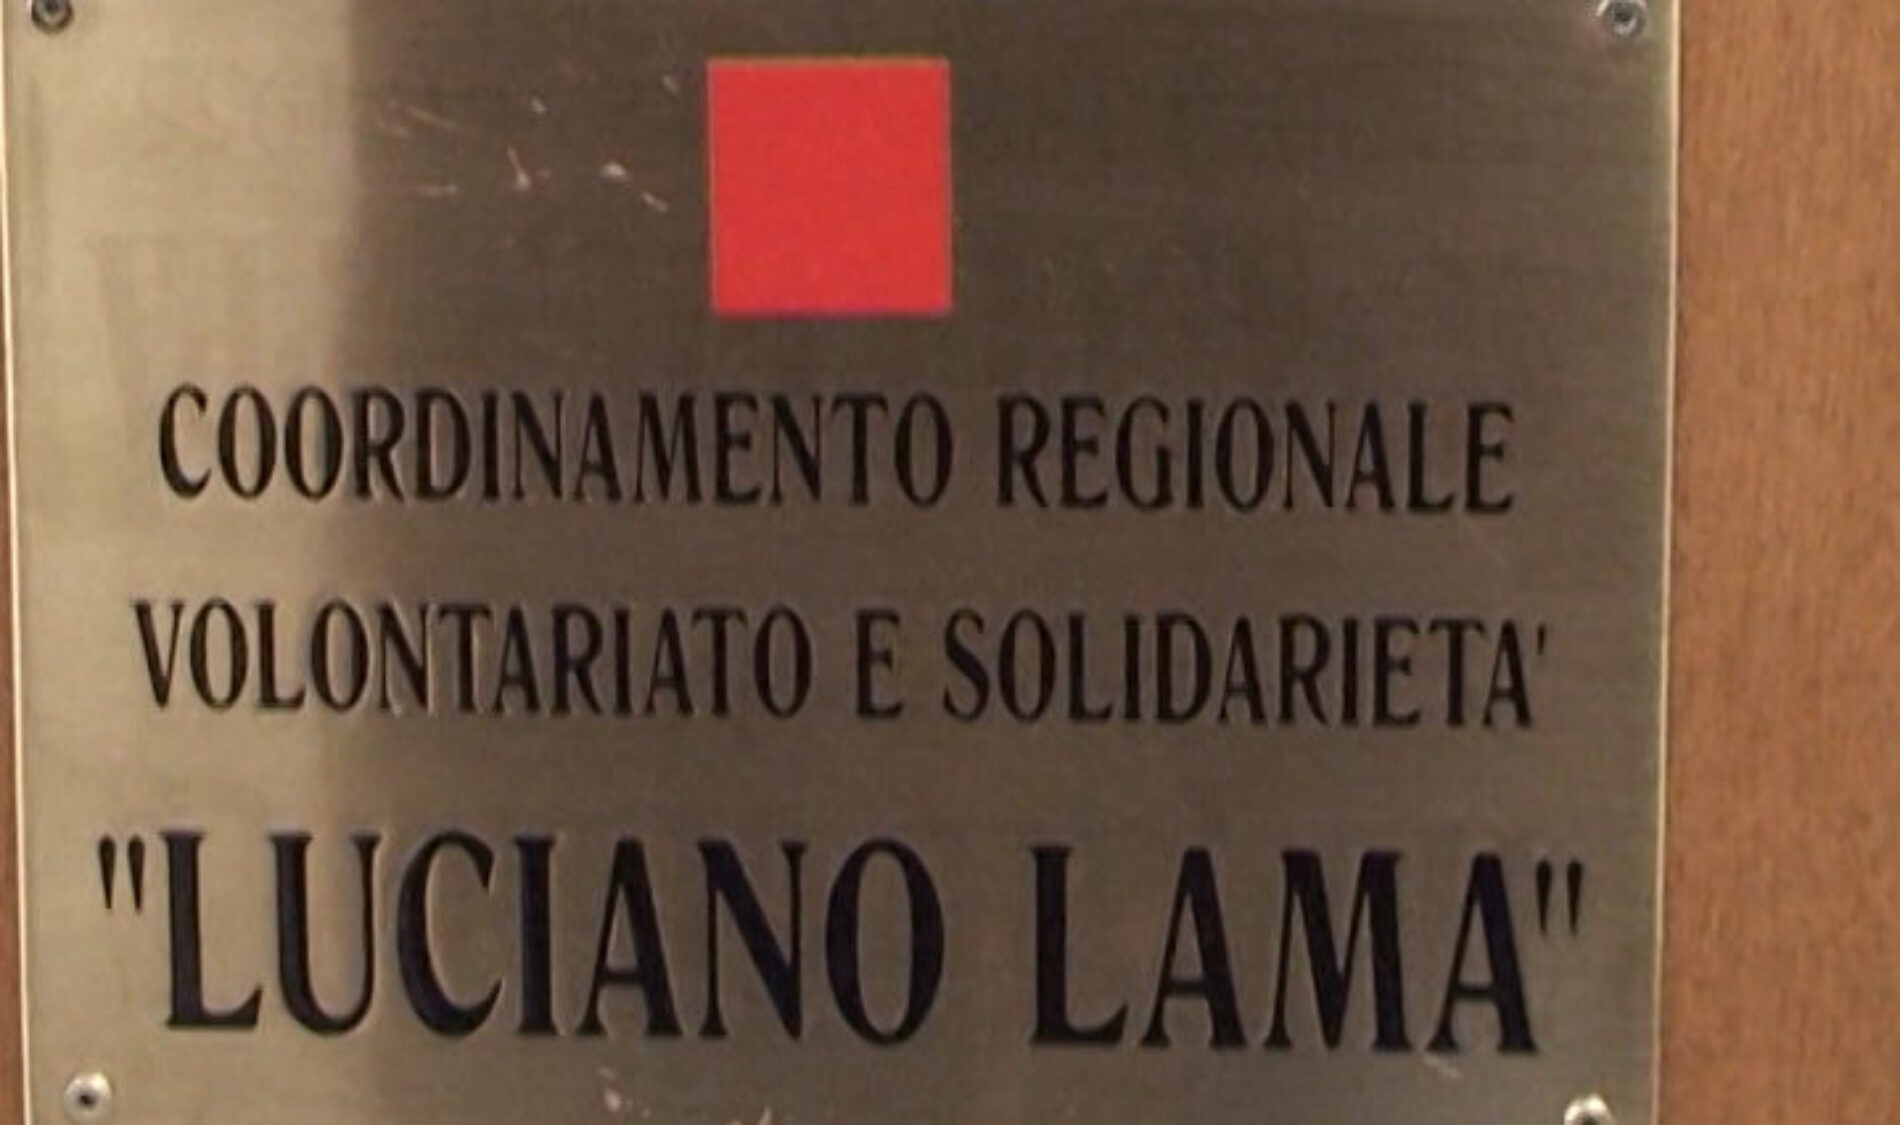 ENNA. L’Associazione di volontariato Ong “Luciano Lama” viene ricordata a Sarajevo per i suoi 30 anni di attivita’ umanitaria nella Bosnia Erzegovina